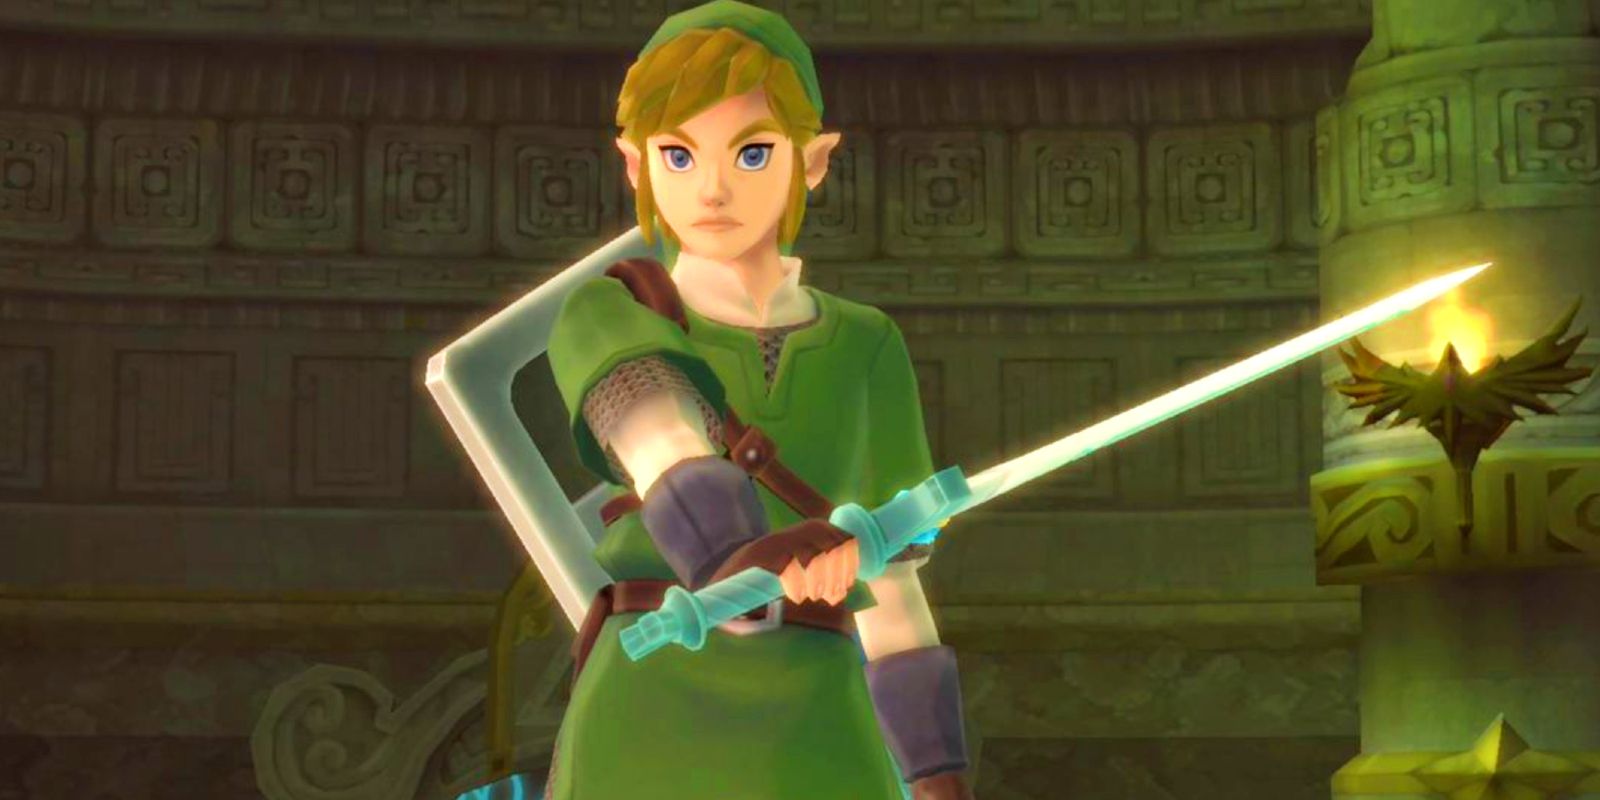 Link holding a sword in a Legend of Zelda game